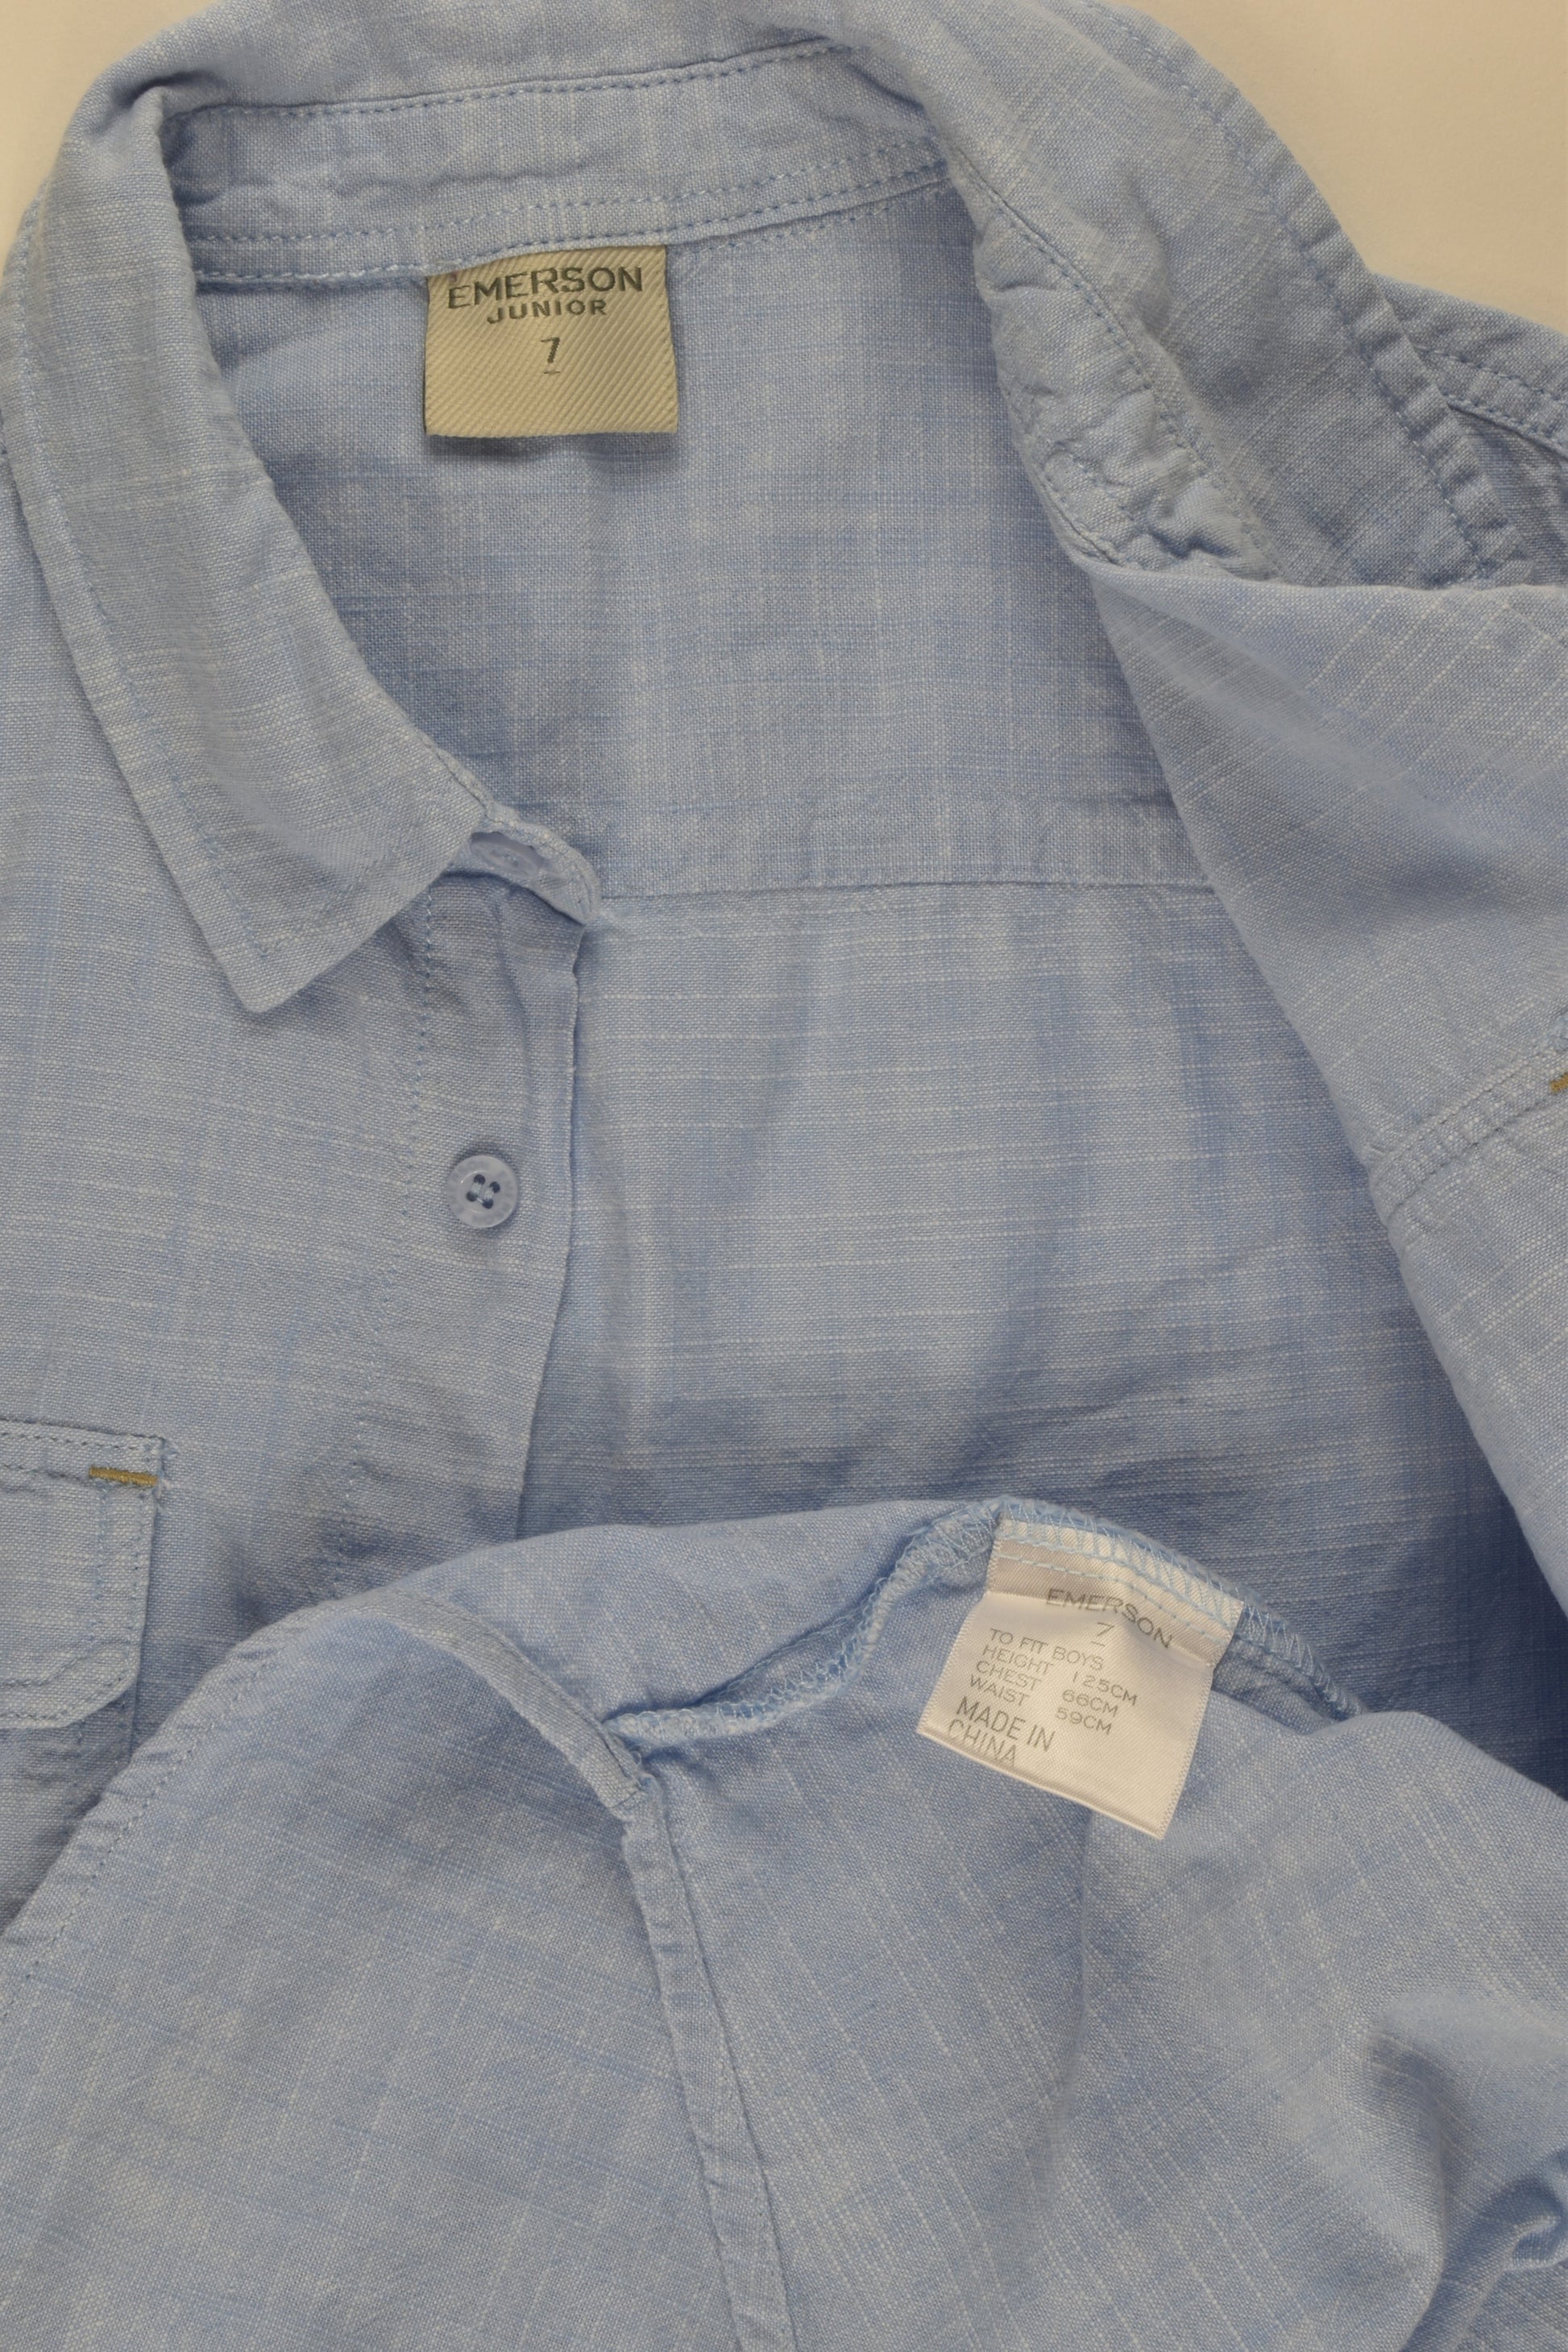 Emerson Junior Size 7 Linen-feel Button-up Shirt